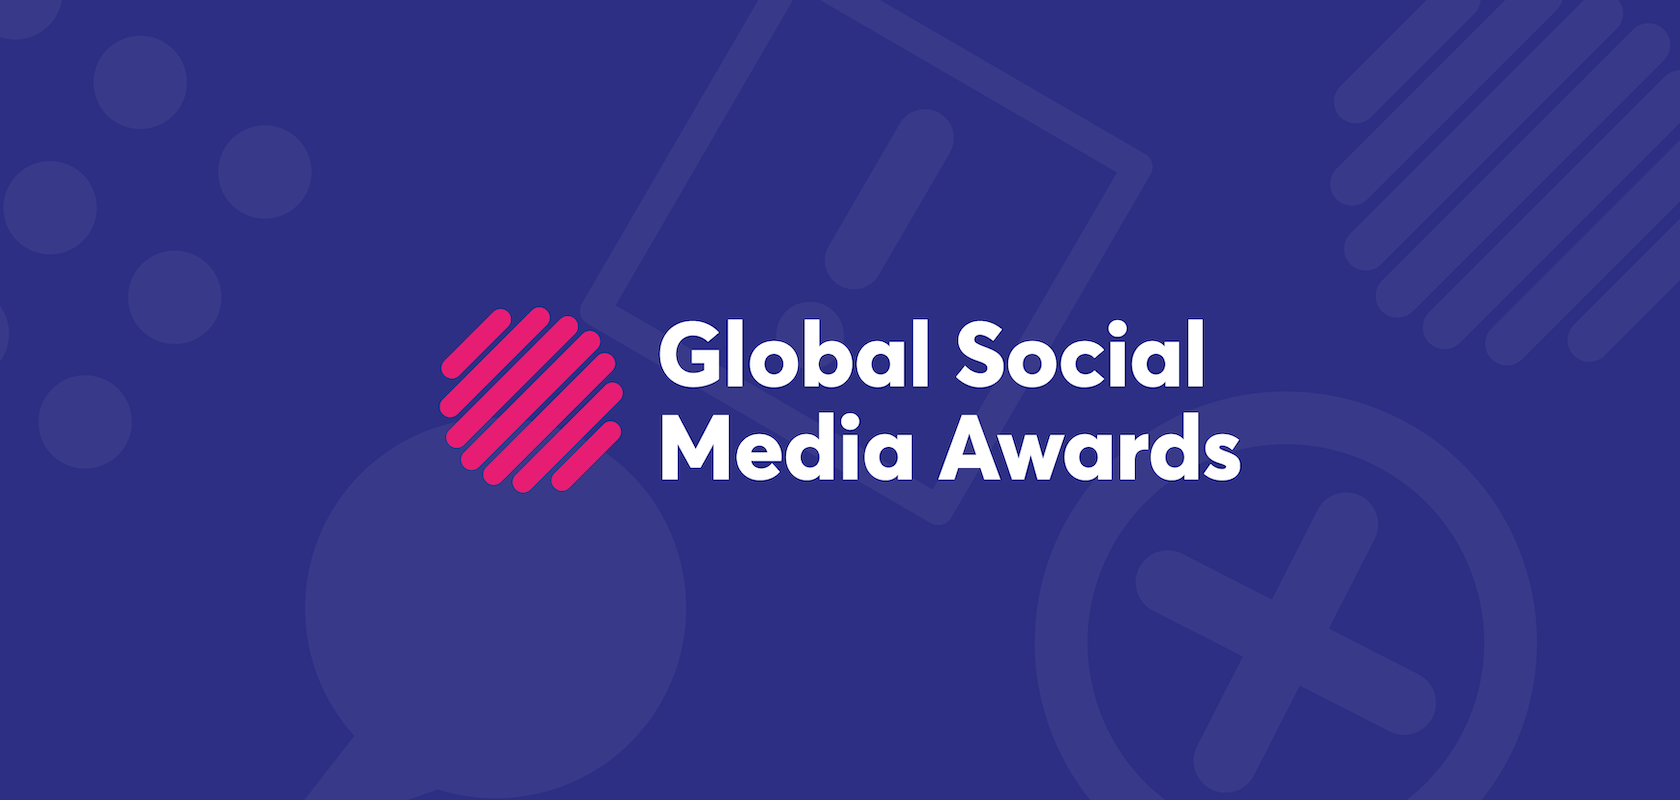 Global Social Media Awards | Celebrating Excellence in Social Media